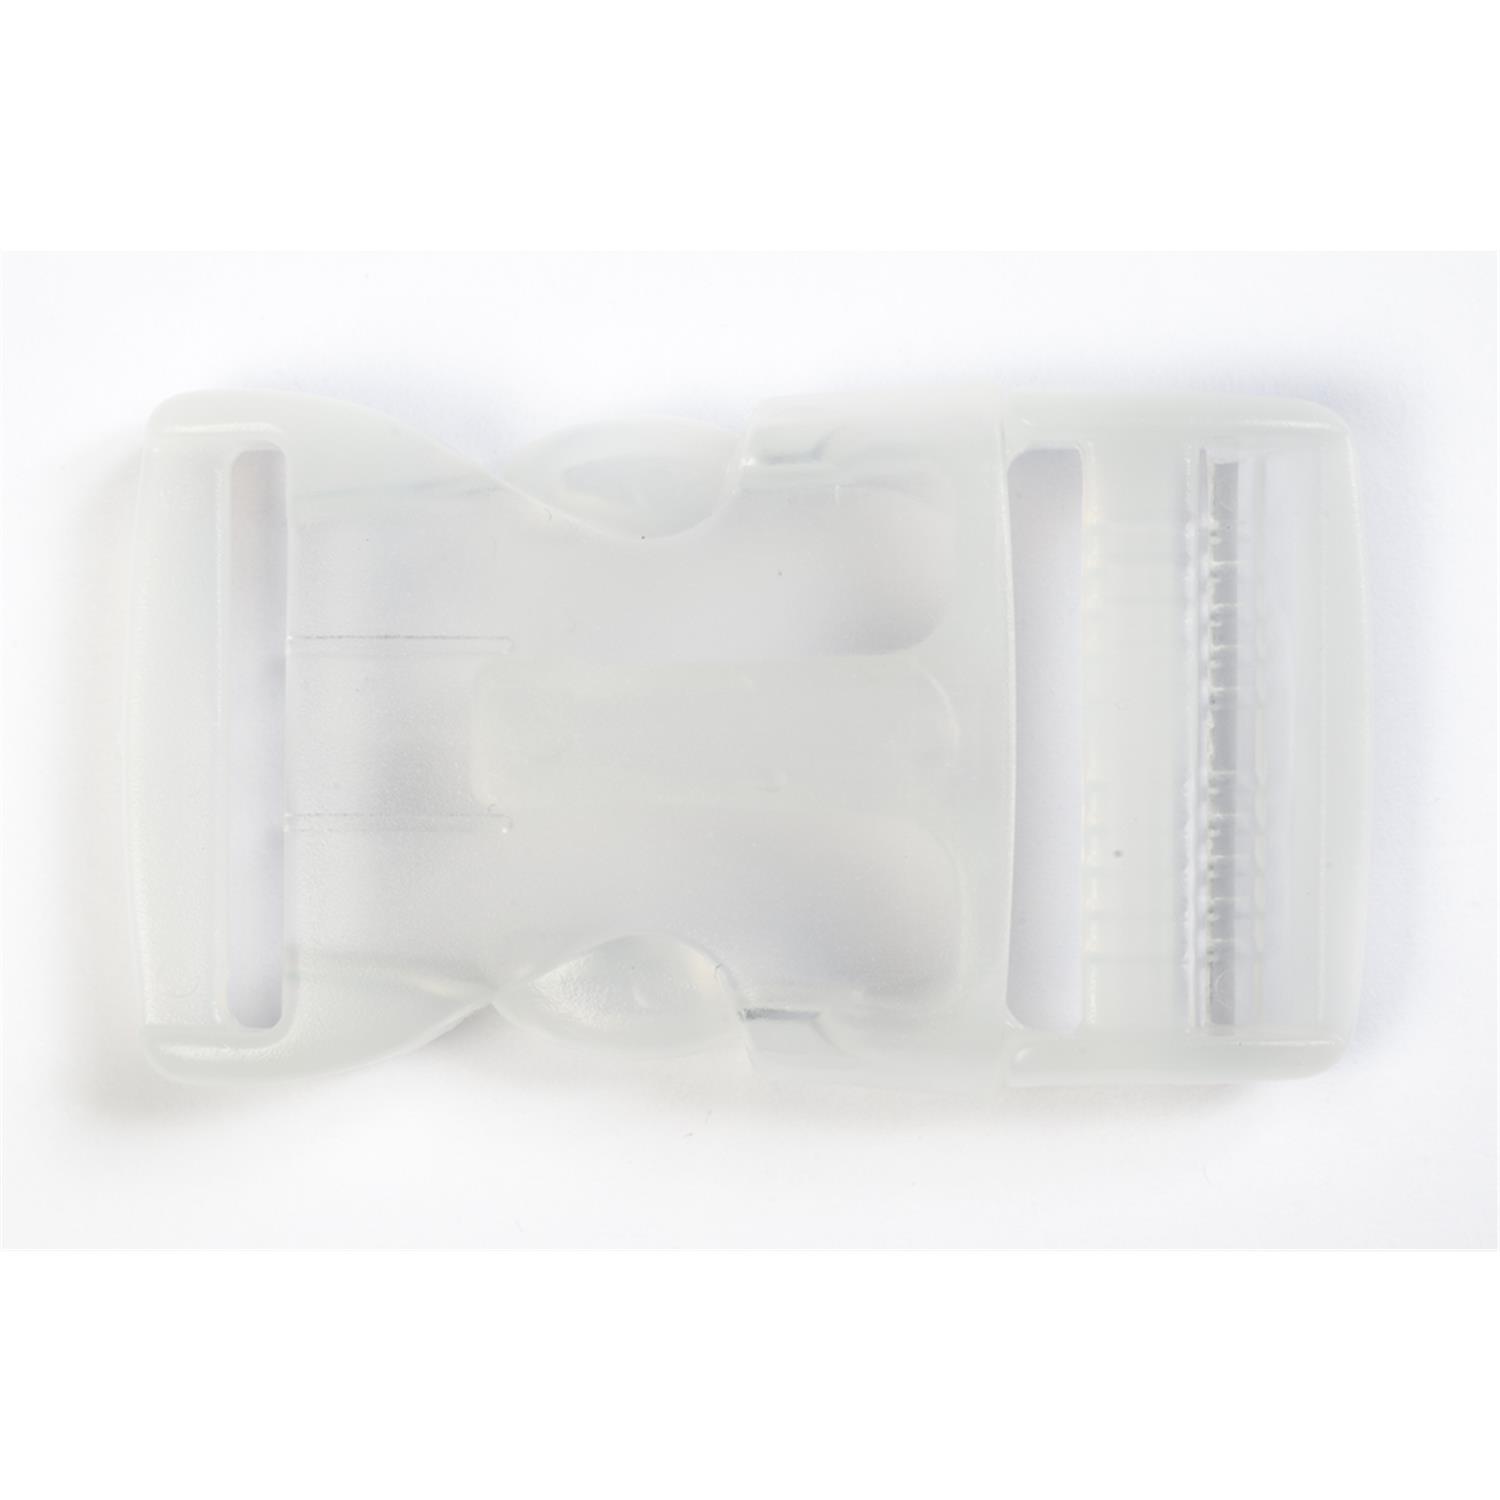 1 Stk. Gurtband-Steckschließer, 15mm, transparent #114